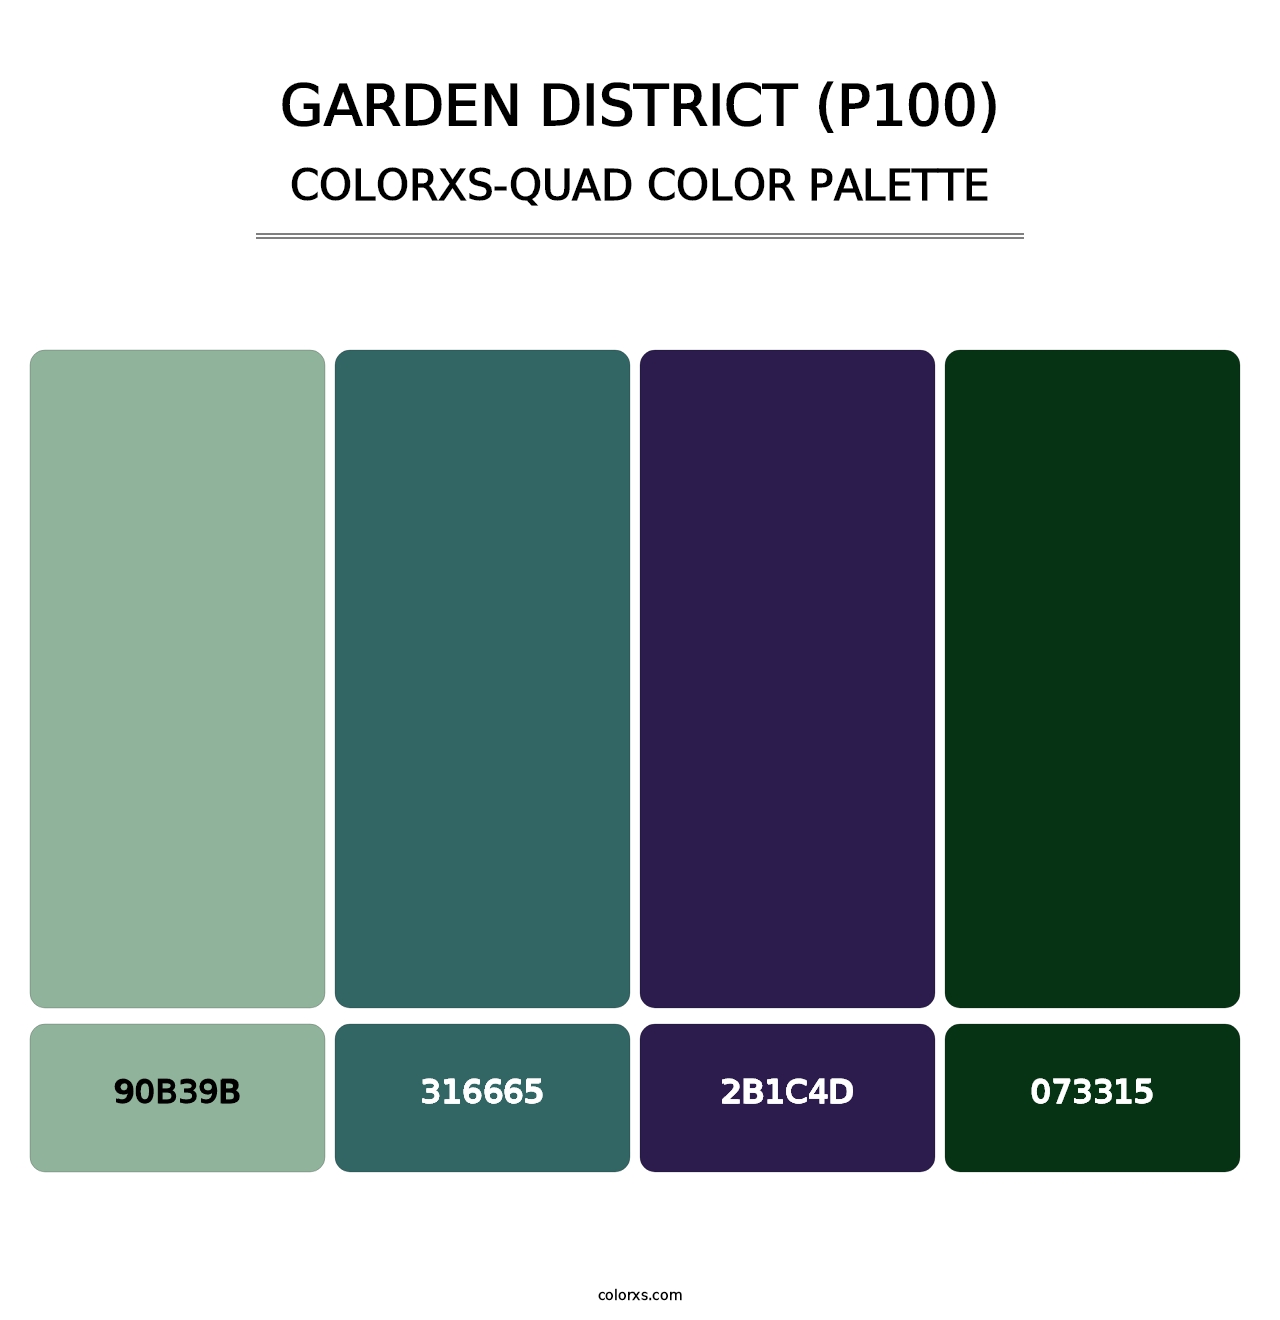 Garden District (P100) - Colorxs Quad Palette